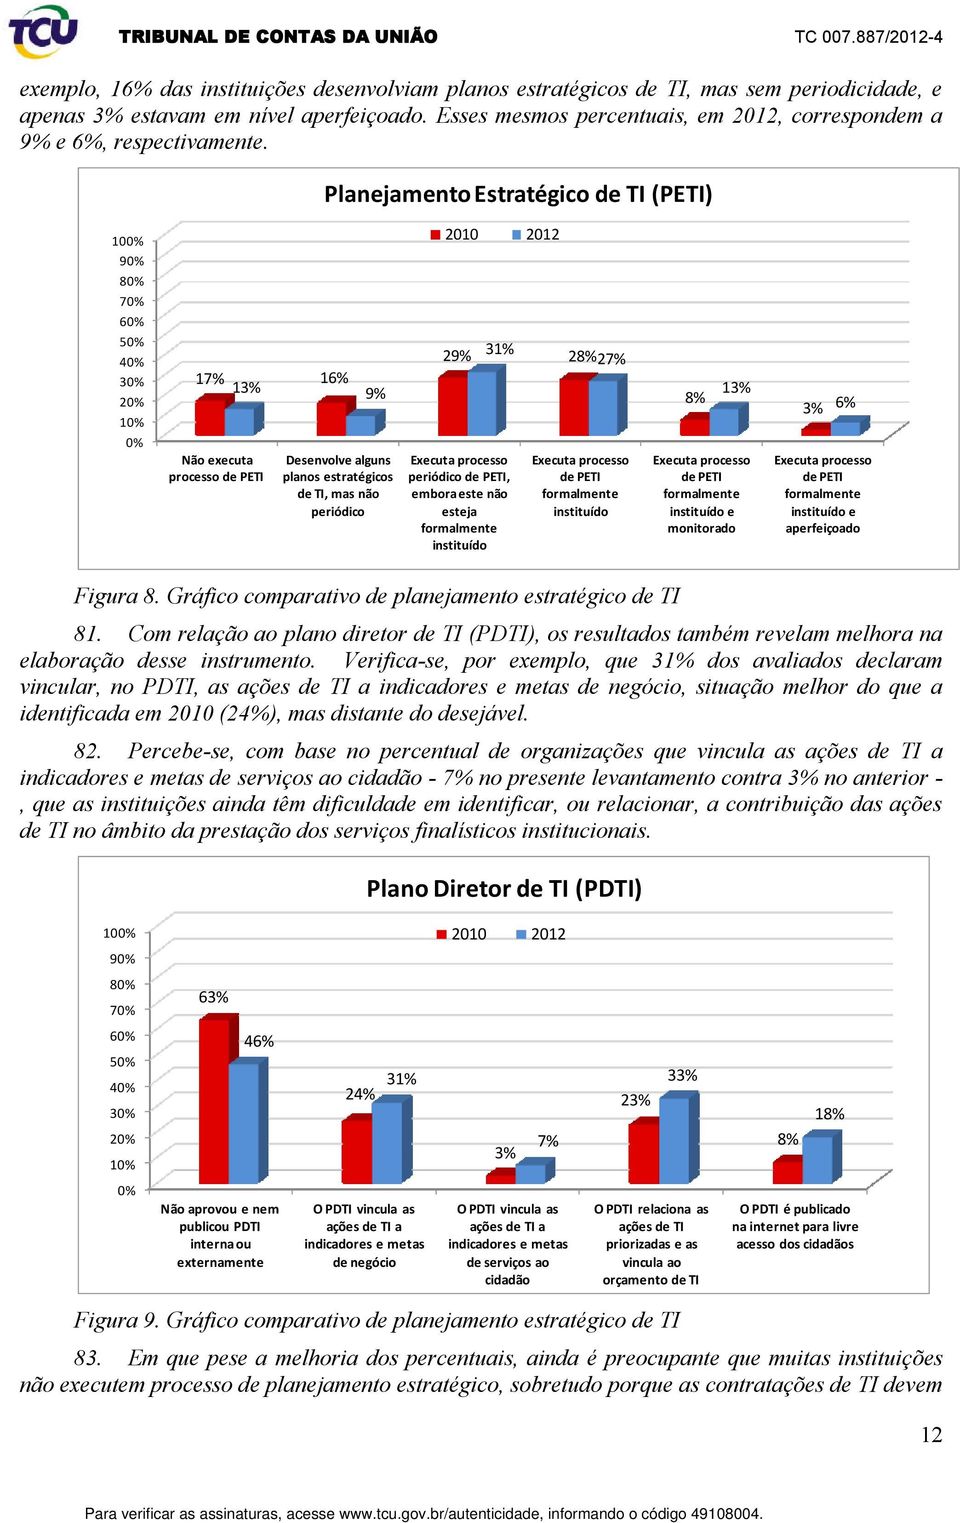 Planejamento Estratégico de TI (PETI) 10 9 7 6 17% 16% 13% 9% Não executa processo de PETI Desenvolve alguns planos estratégicos de TI, mas não periódico 2010 2012 29% 31% 28% 27% Executa processo